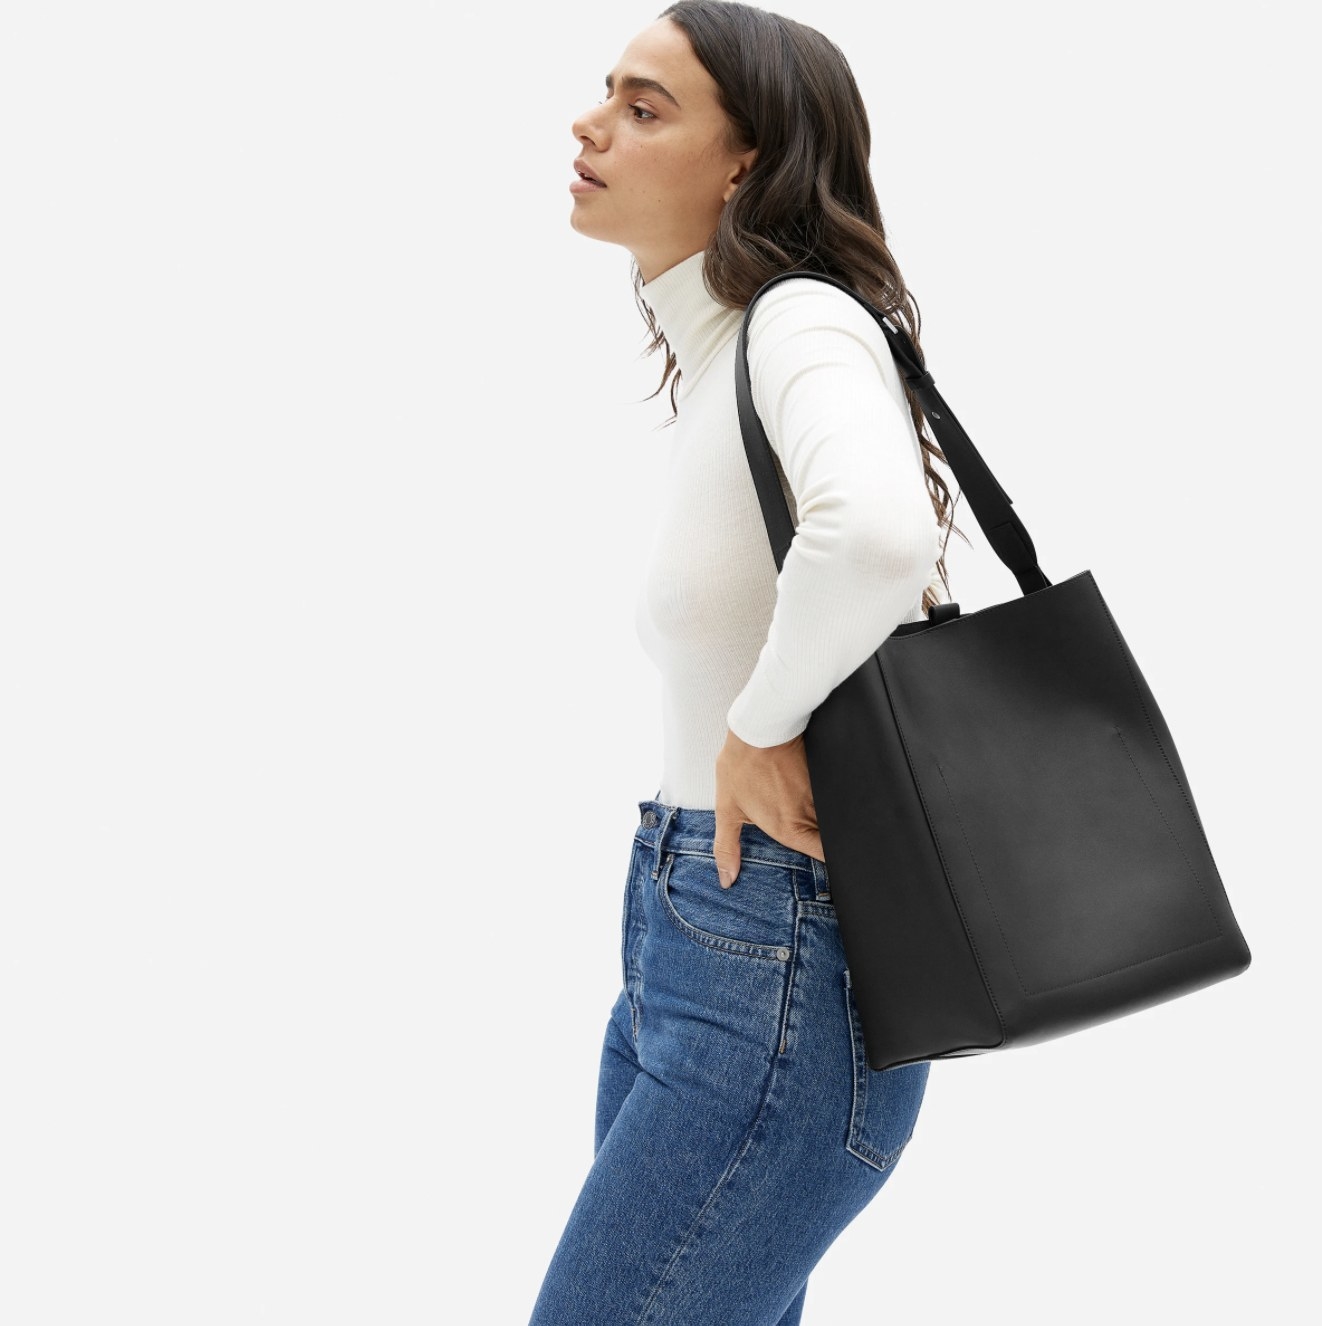 Model wearing the black bag slung over her shoulder